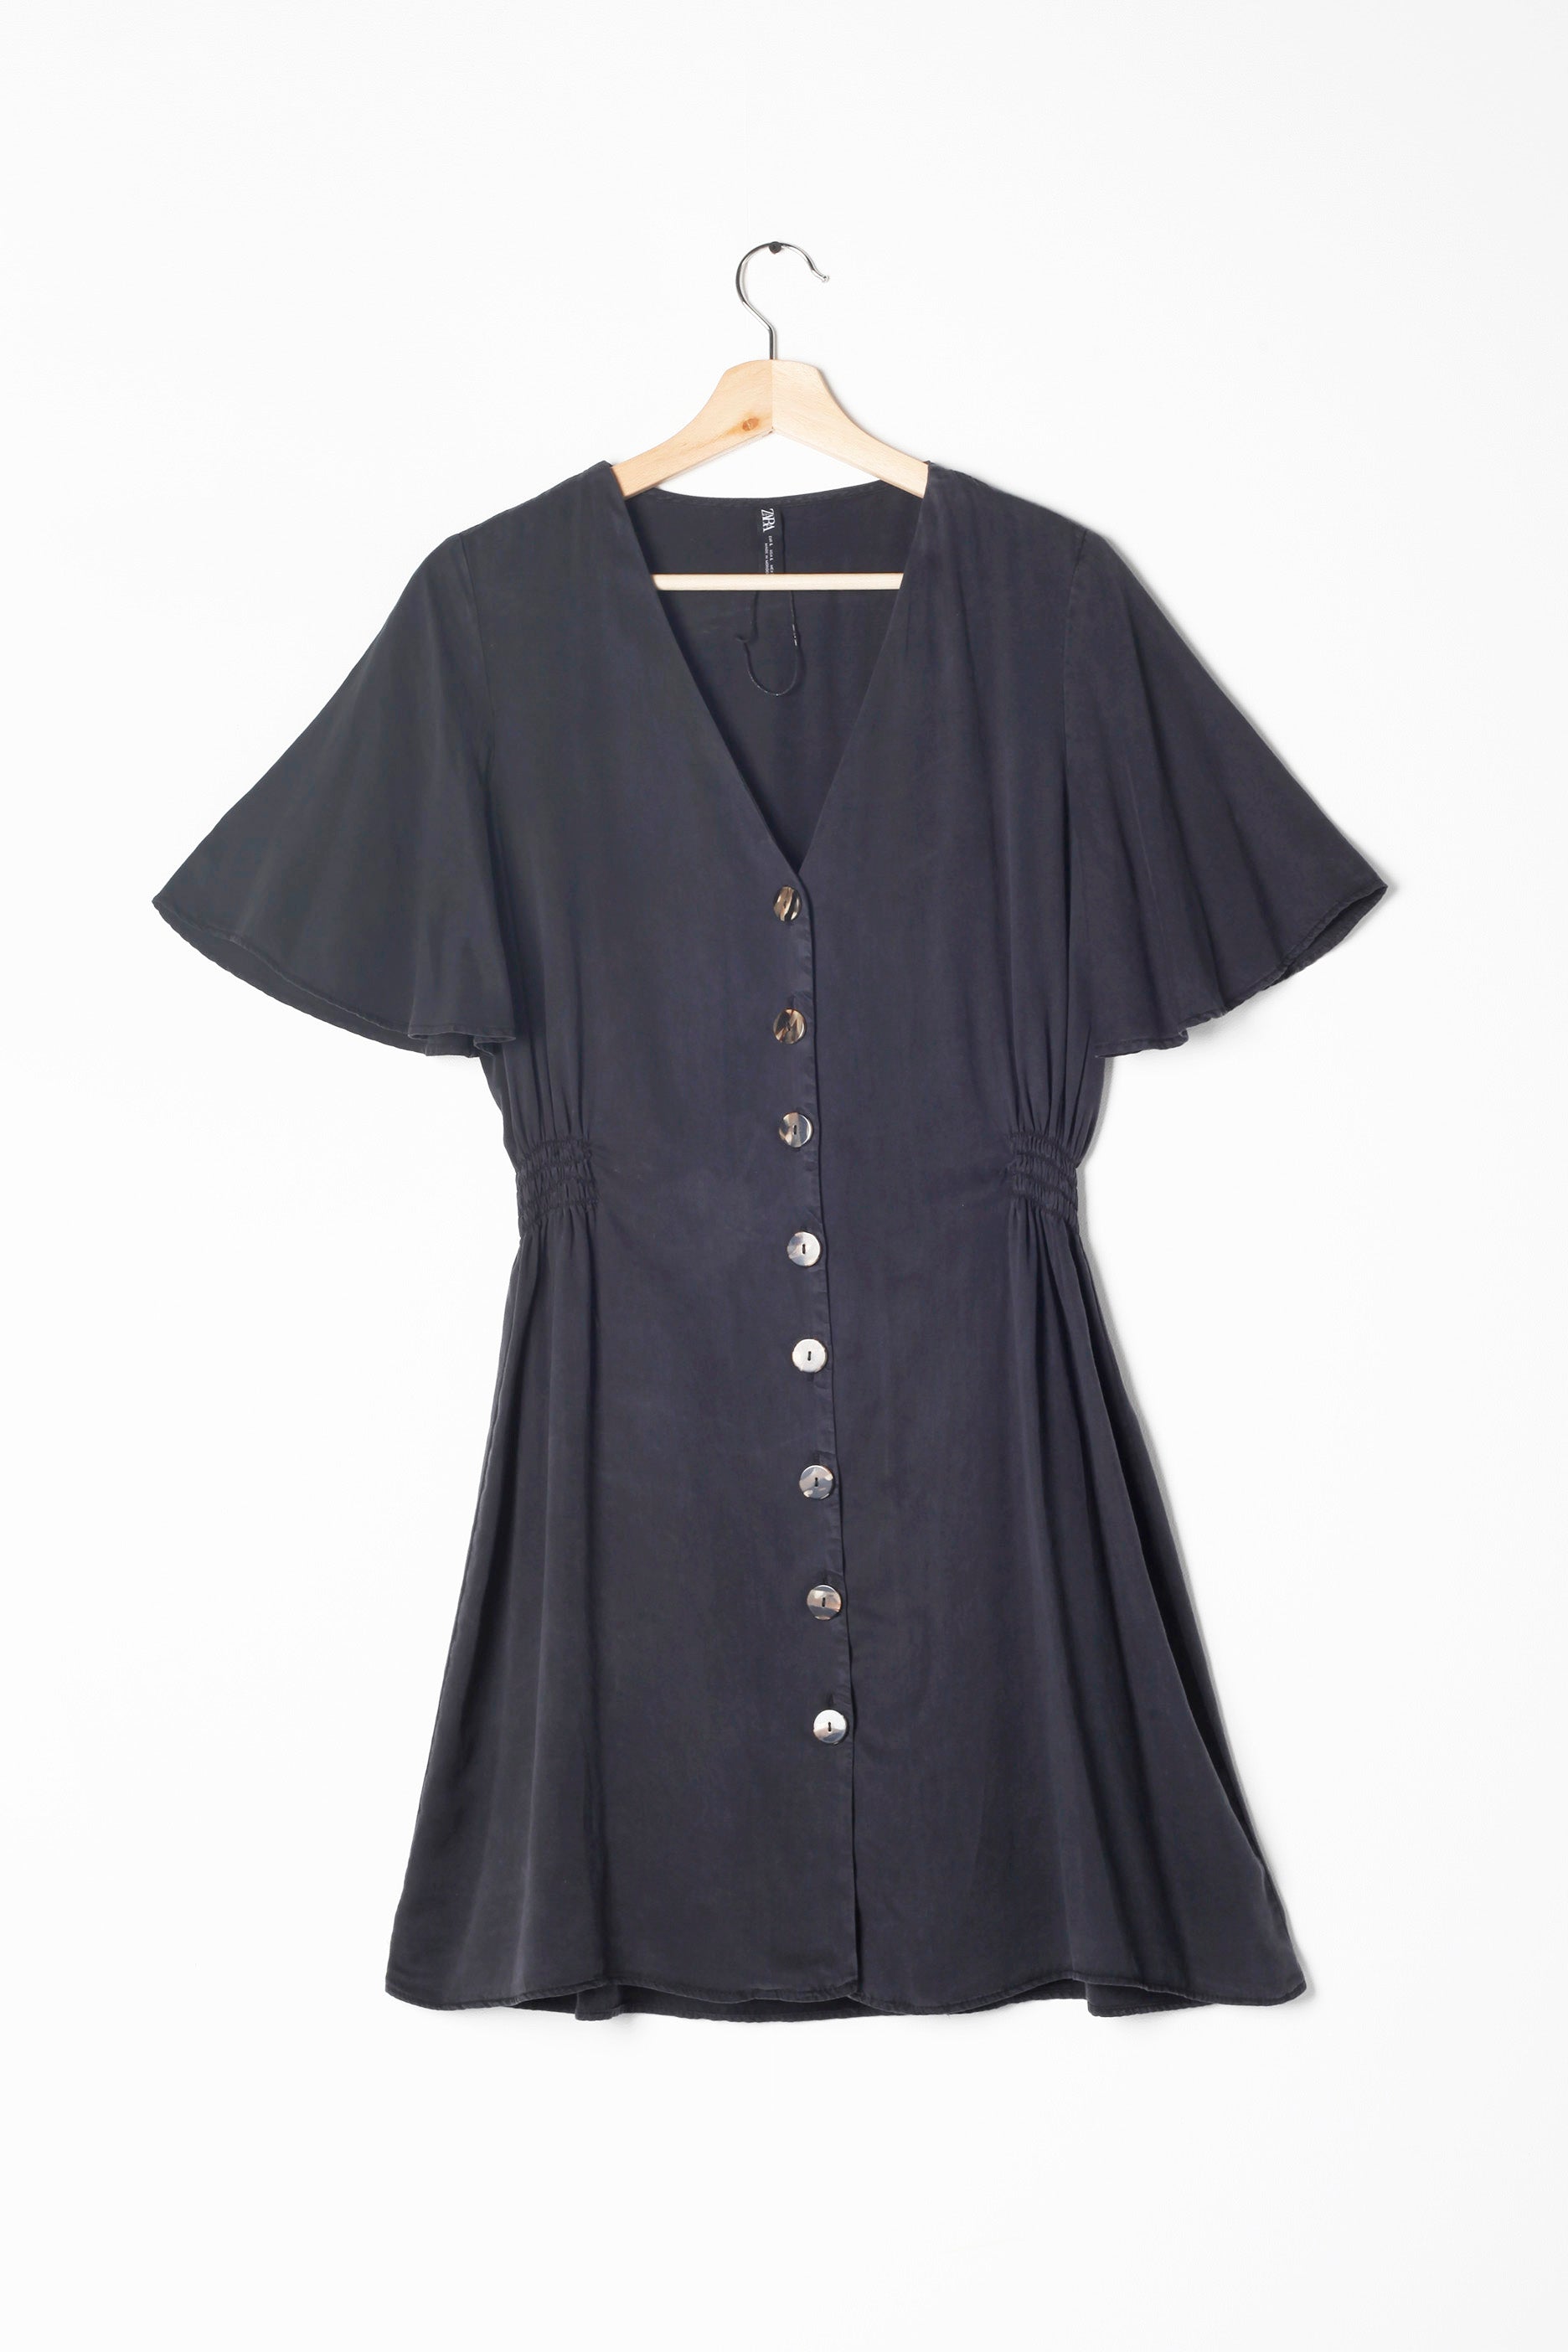 Zara Navy Blue Short Dress (Small)